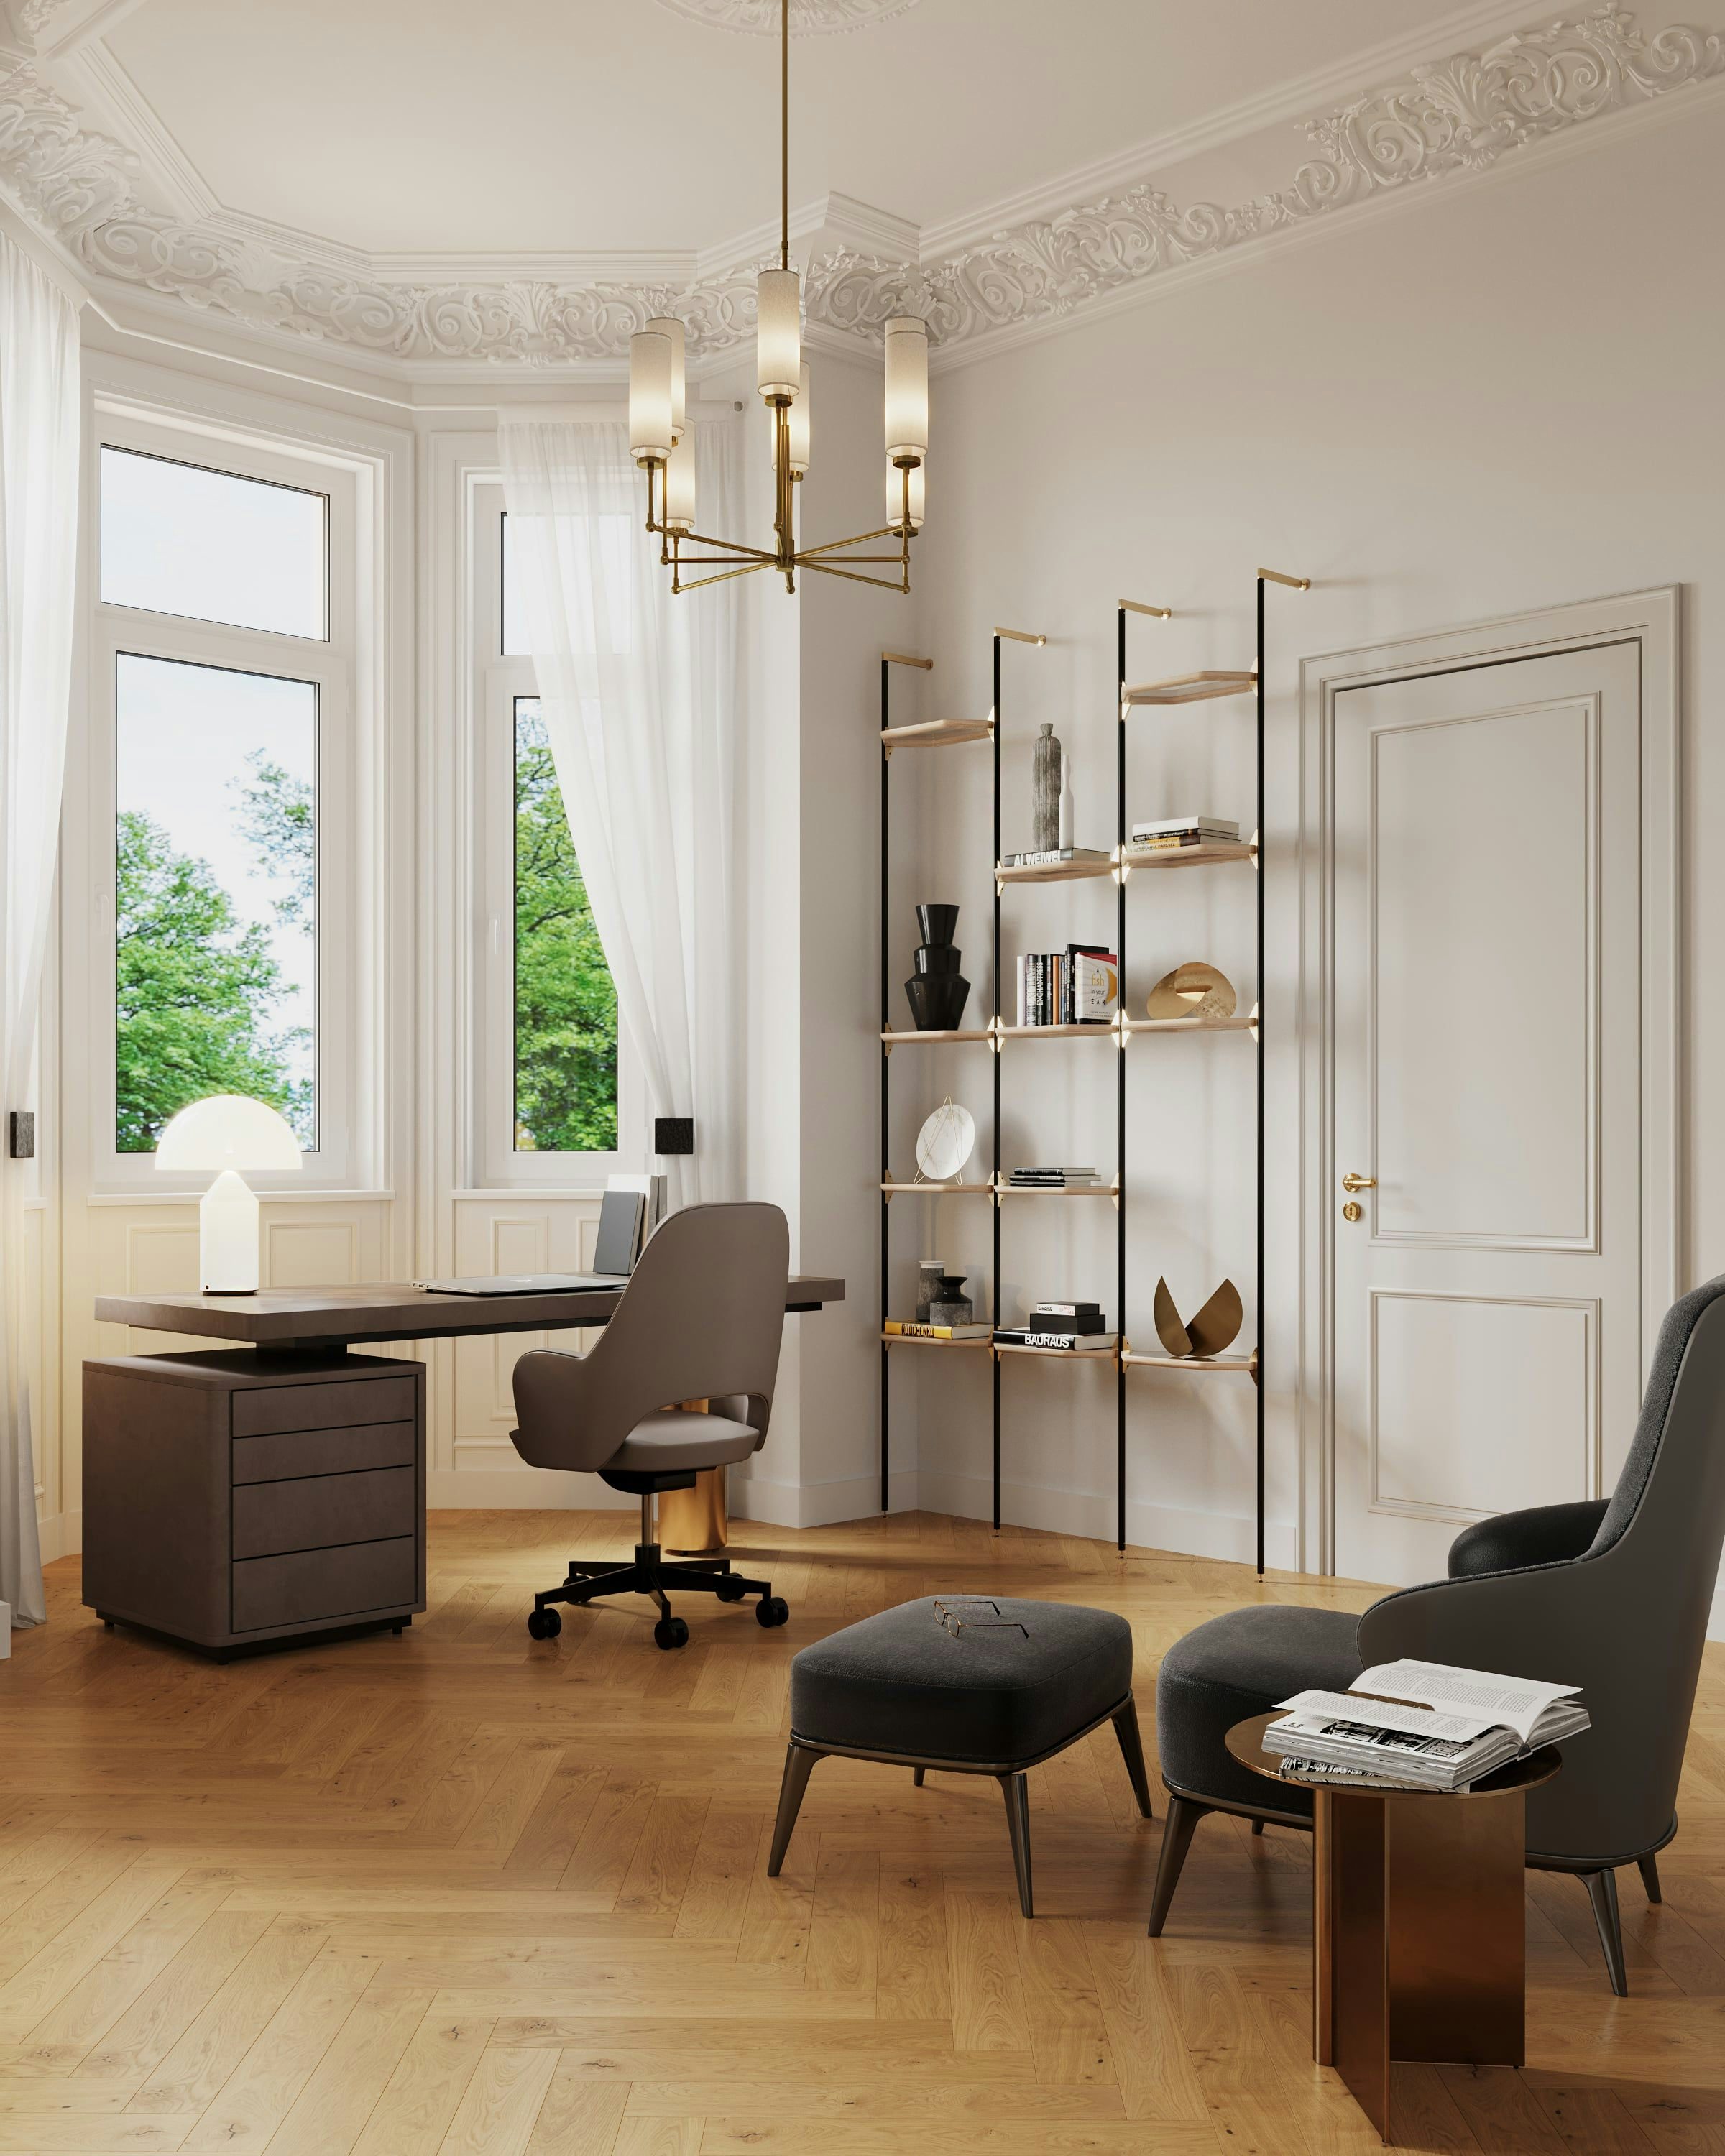 3D Innenvisualisierung des Arbeitszimmers in einer renovierten historischen Wohnung in der Fliederstraße, Hamburg